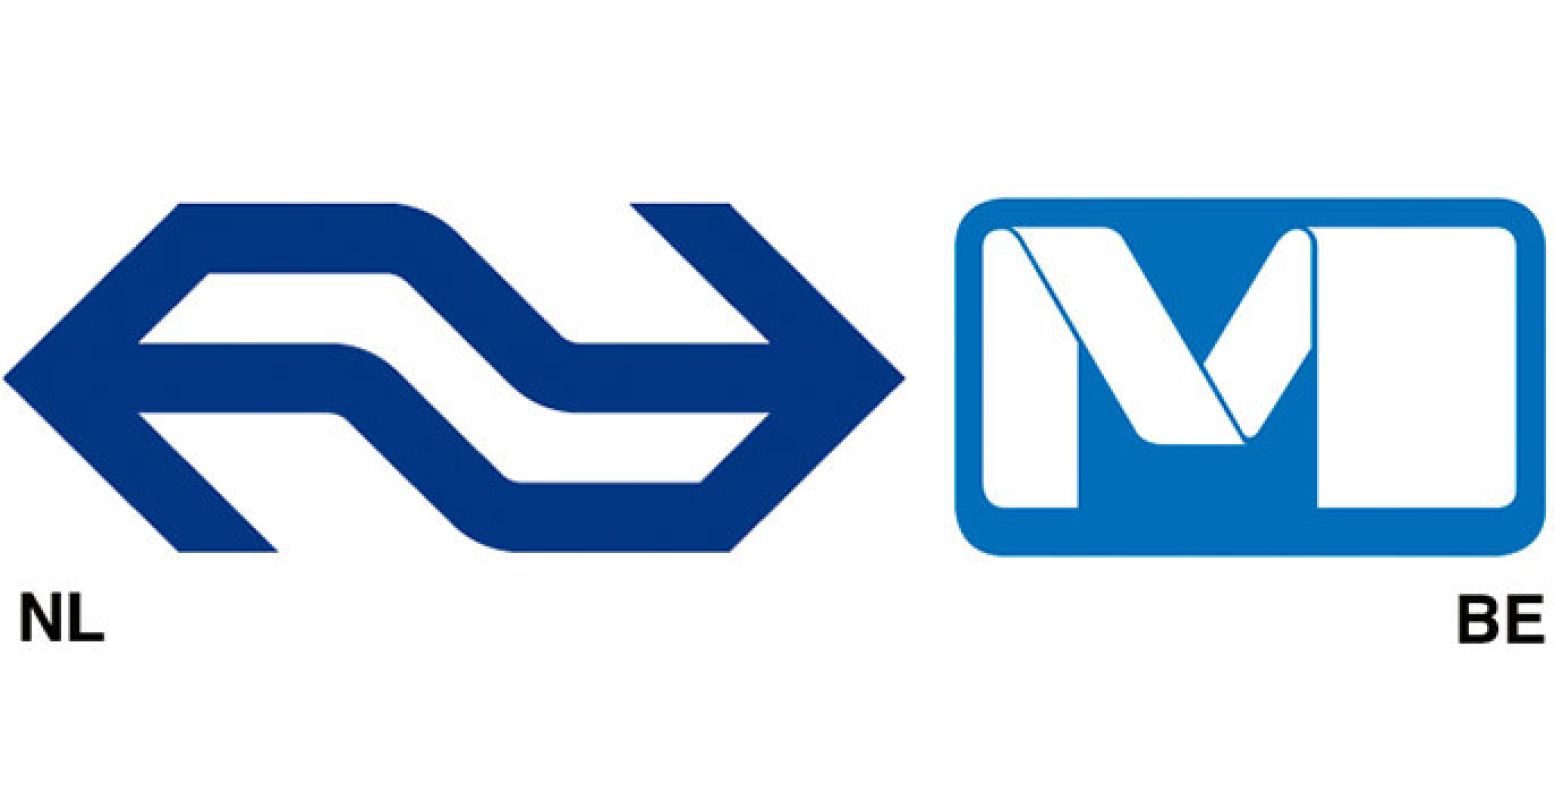 Ook het openbaar vervoer doet mee. Links: Tel Design/Gert Dumbar, Logo Nederlandse Spoorwegen, 1967. Rechts: Jean-Paul Emonds-Alt, Logo Metro in Brussel, 1980